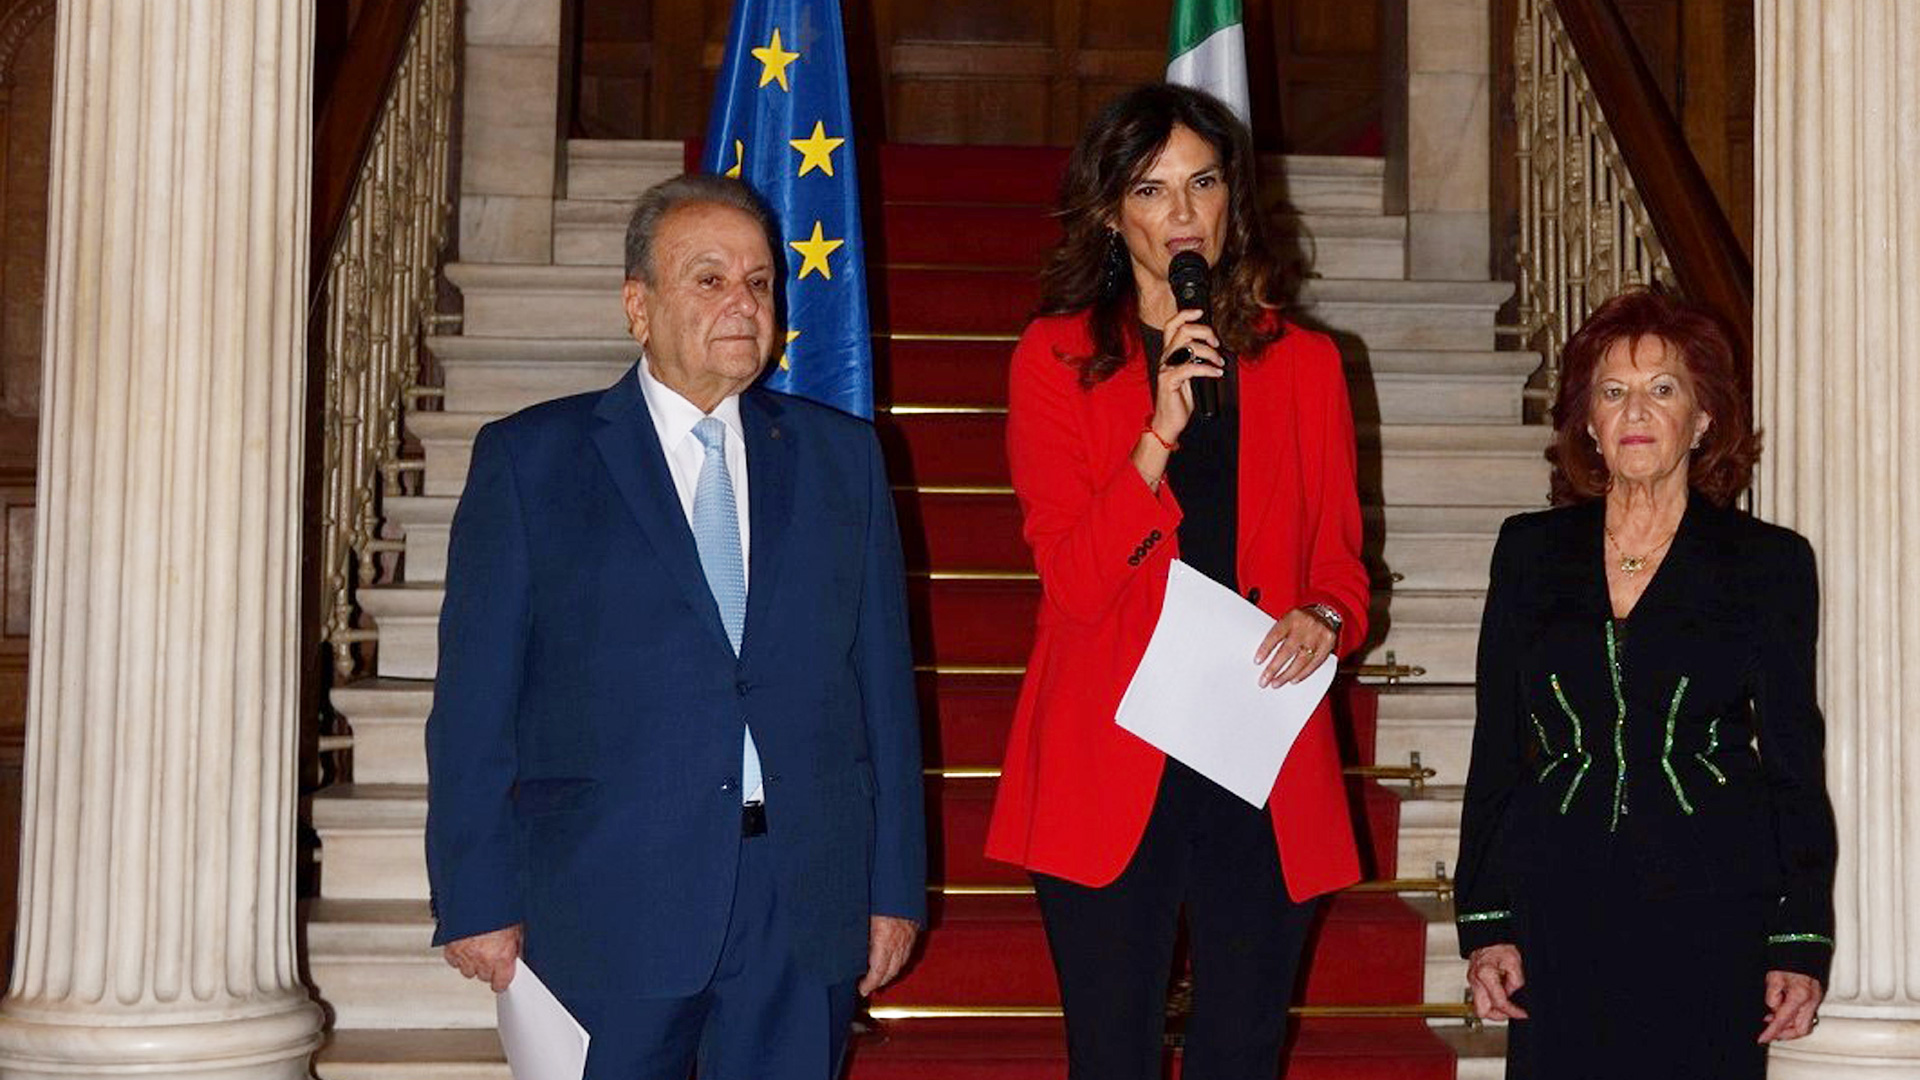 Απονομή του Διασήμου του Τάγματος Τιμής της Ιταλικής Δημοκρατίας “Cavaliere dell’Ordine della Stella d’Italia” στον Πρόεδρο και την Αντιπρόεδρο του Μανιατακείου Ιδρύματος